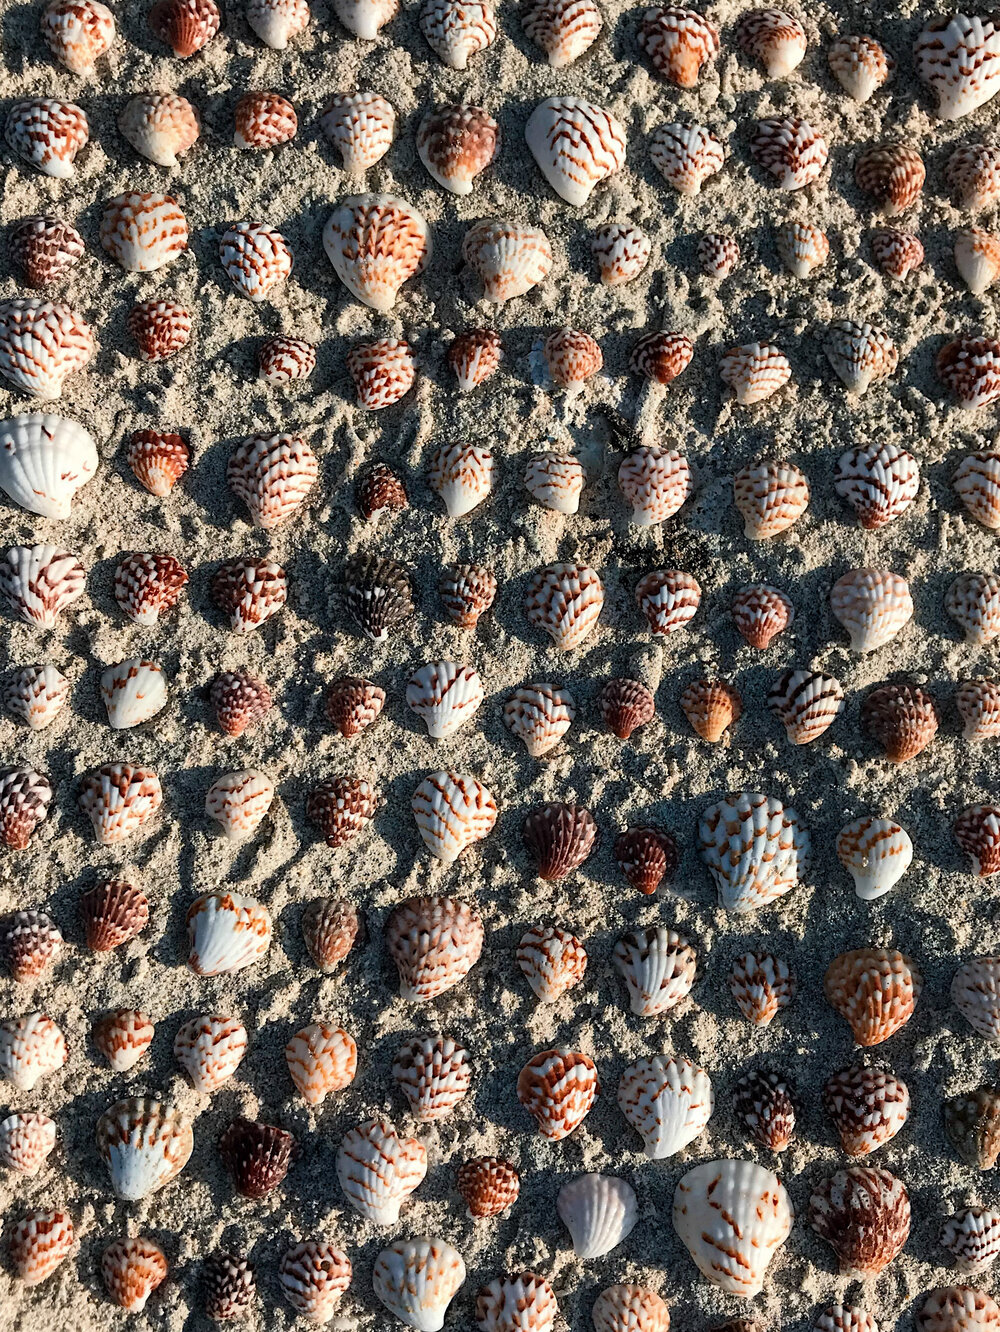  shell collection at Great Darwin Bay, Genovesa Island 